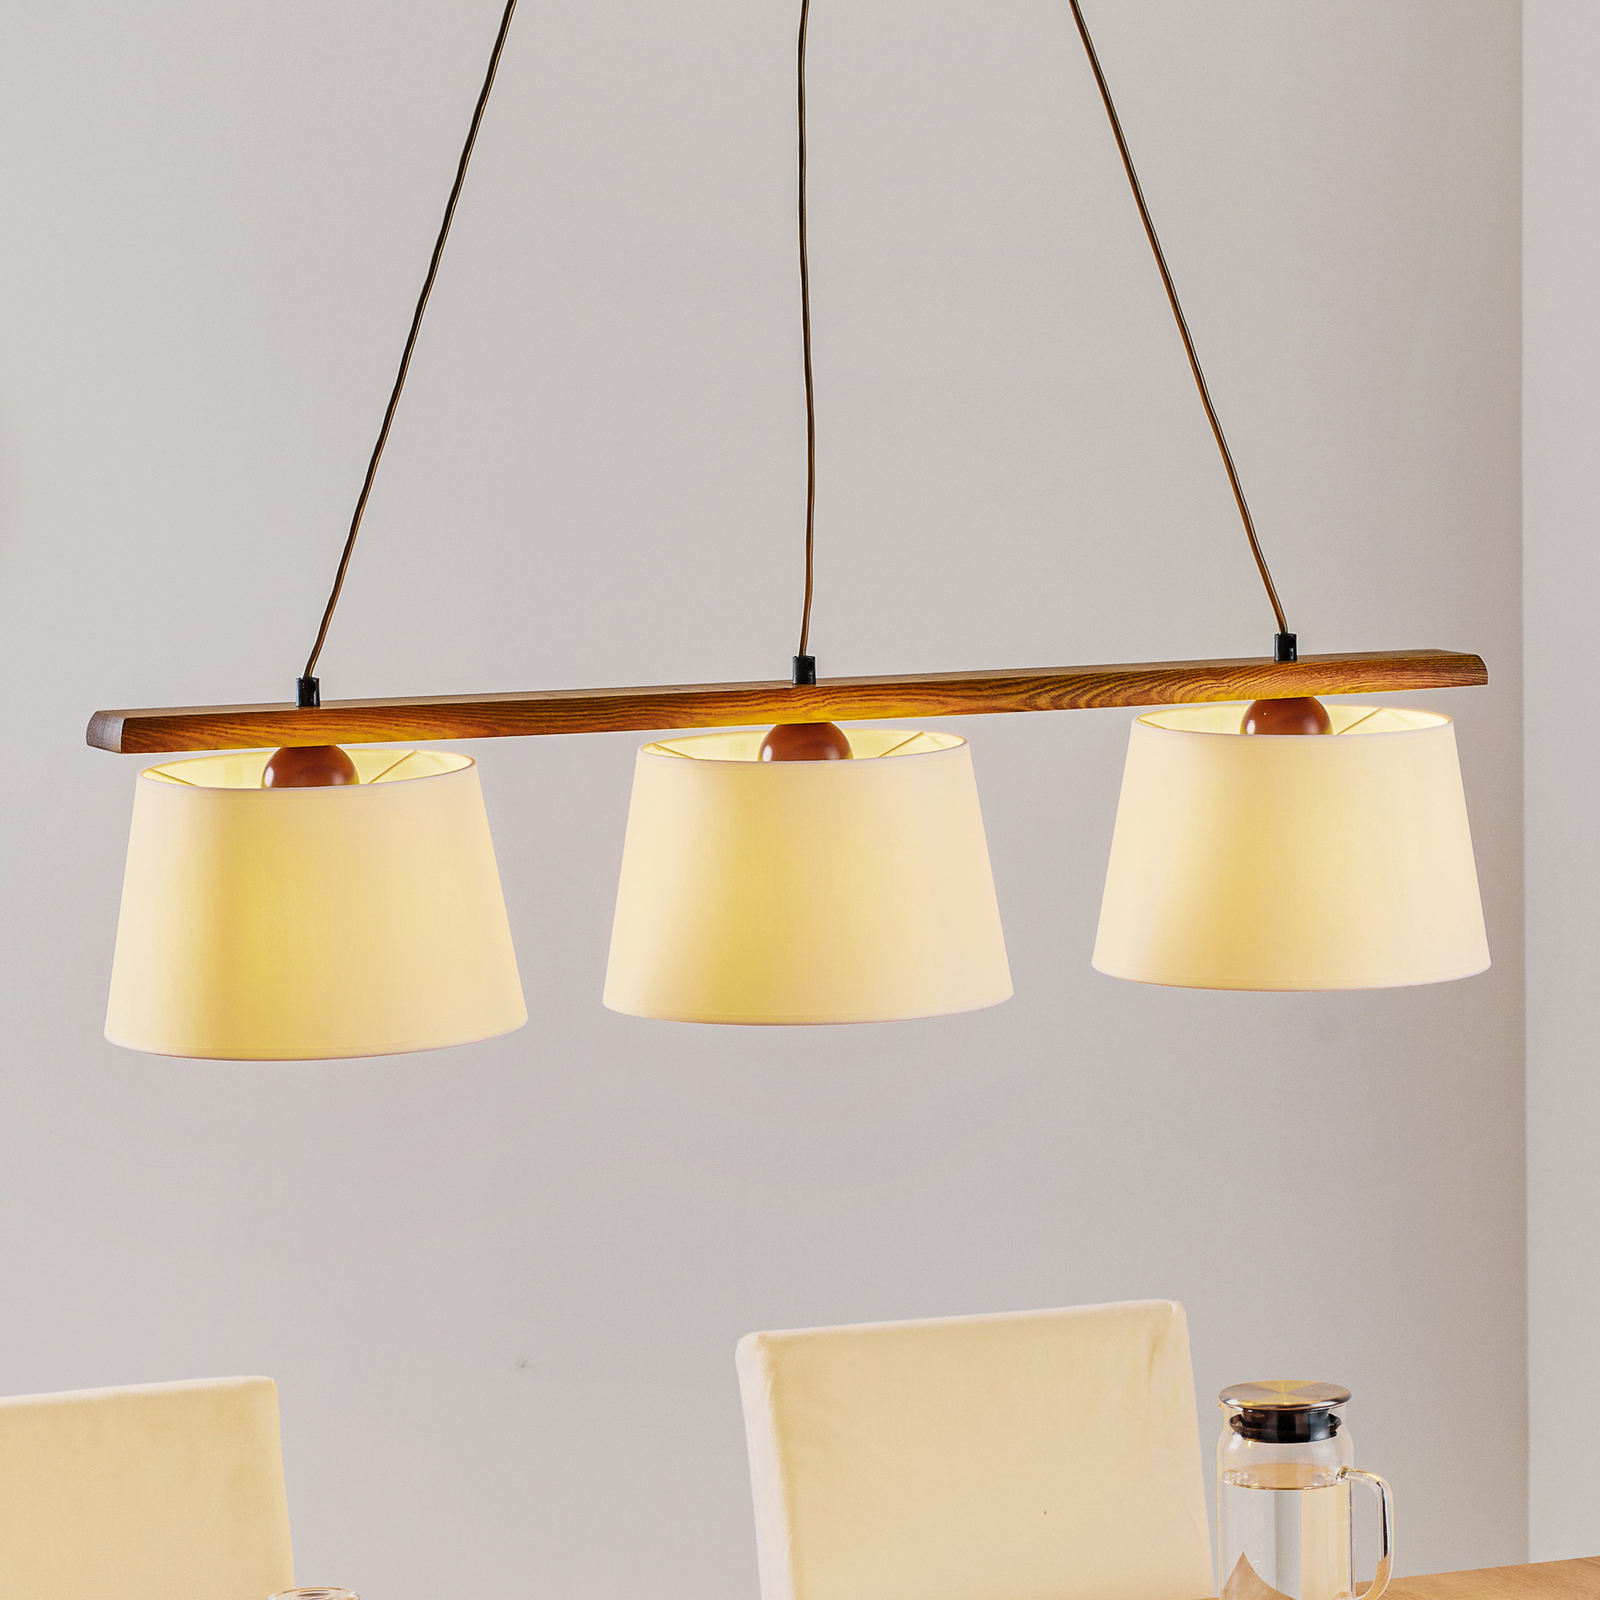 Hanglamp Sweden, 3-lamps, eiken rustiek